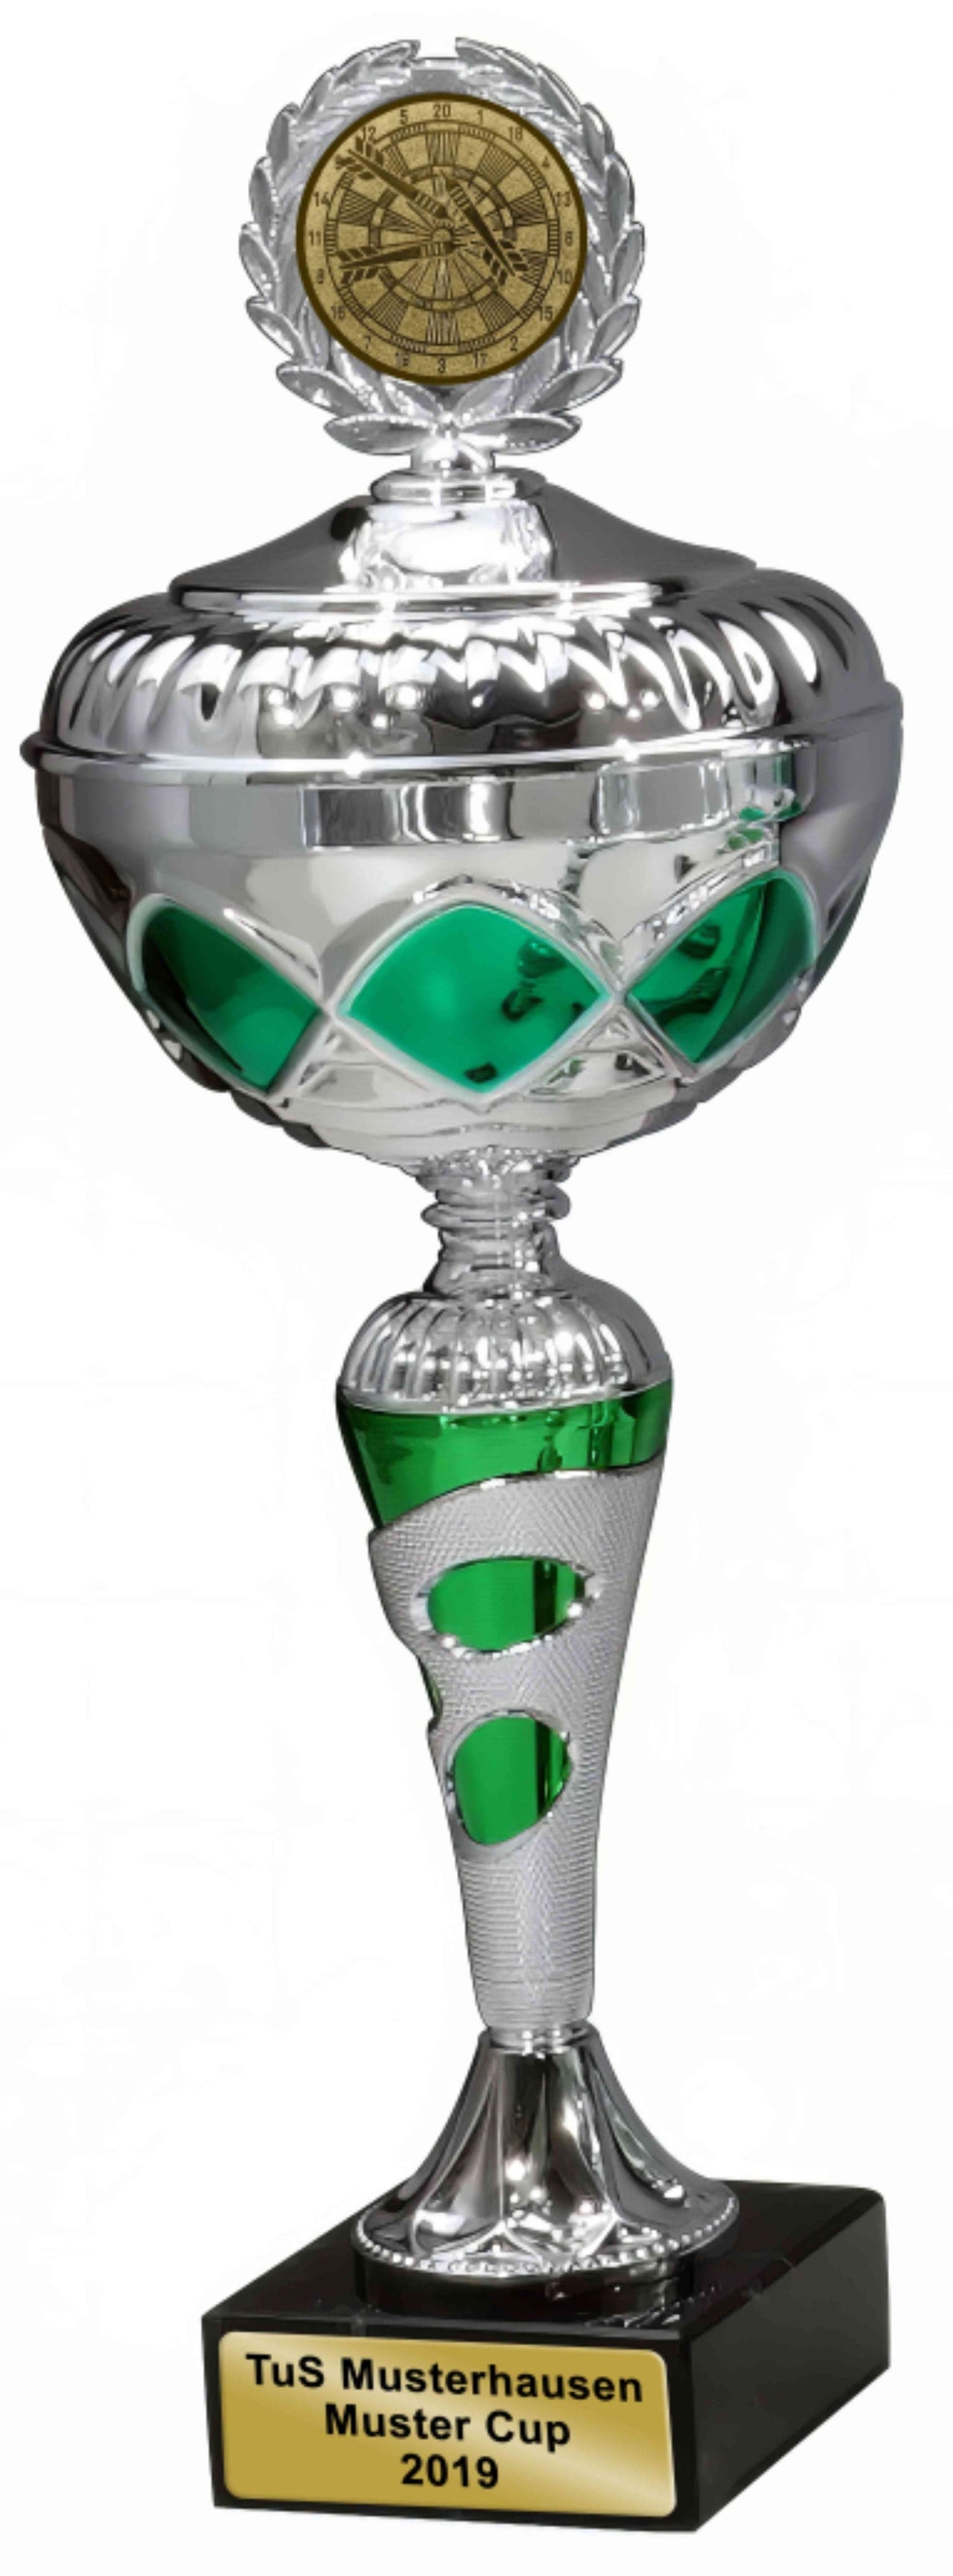 Silberner Pokal Trier 3- er Pokalserie 317 mm - 340 mm PK759740-3-E50 mit grünen Akzenten, gekrönt von einer goldenen Medaille, auf einem schwarzen Sockel mit der Aufschrift "tus muster